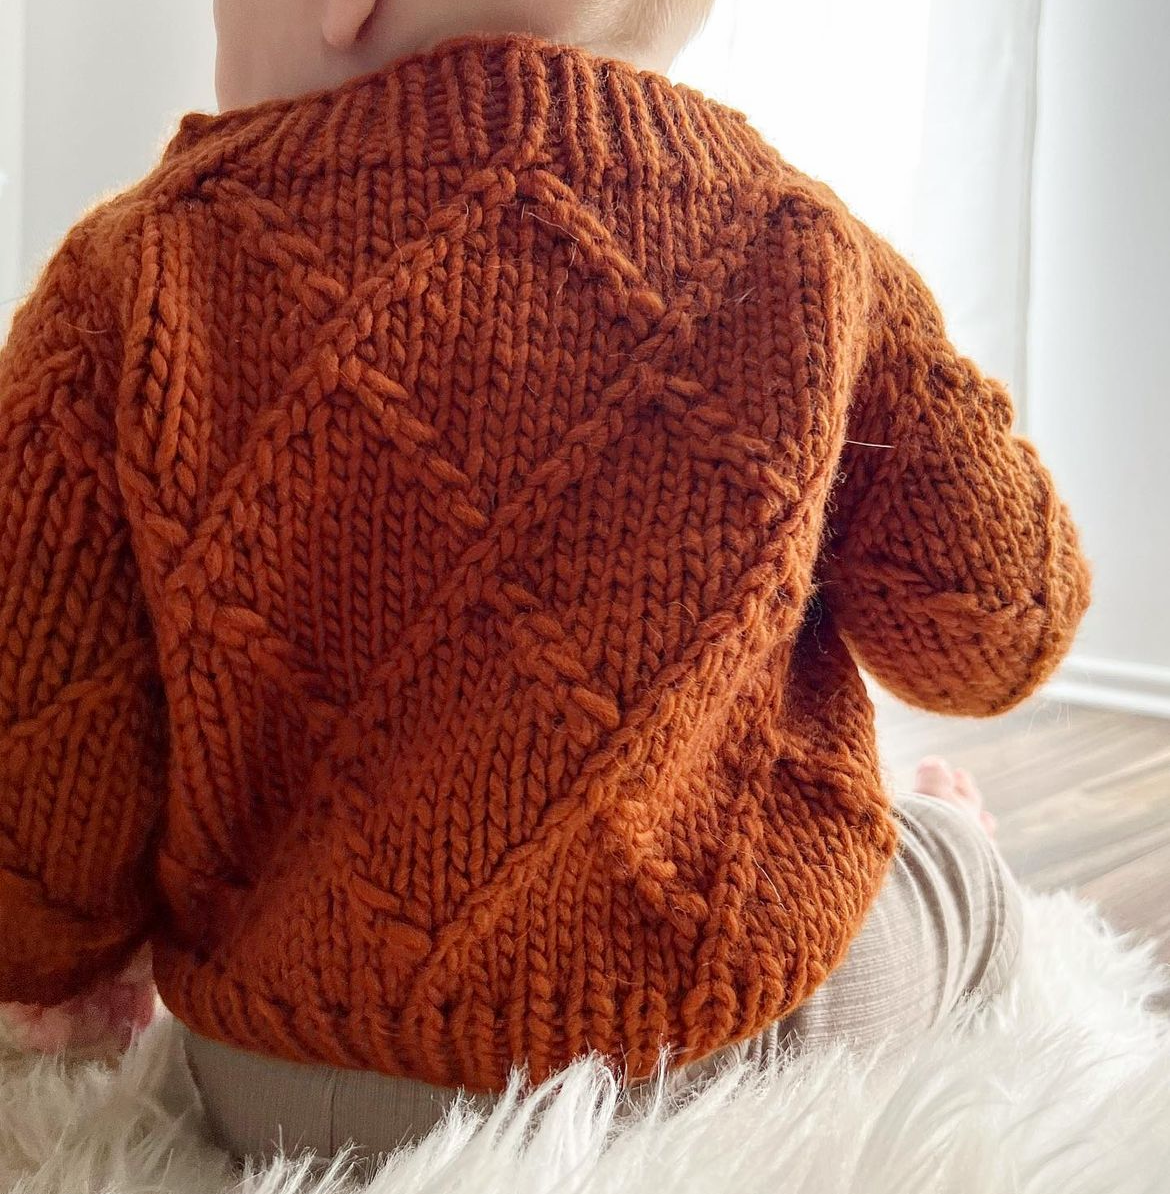 Inverno Sweater Kids Edition - knitting pattern by TheKnitStitch